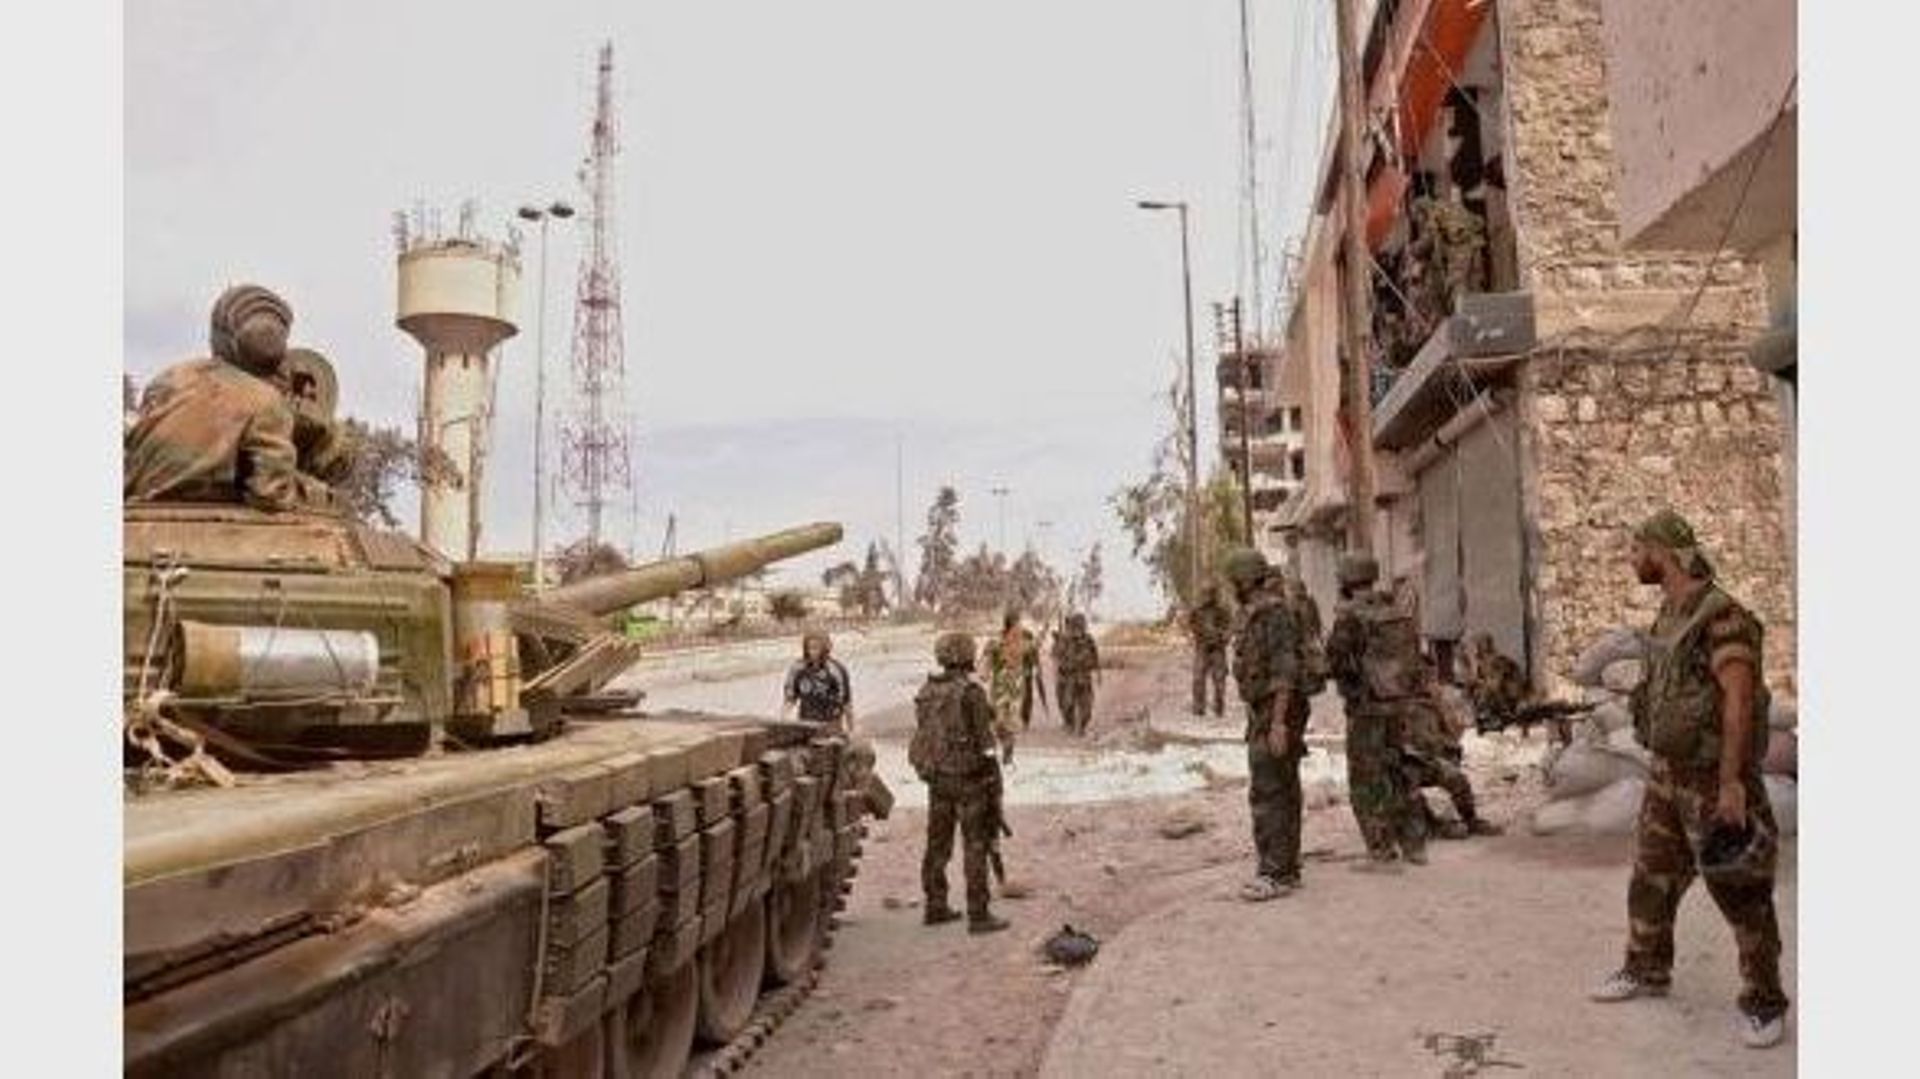 Des soldats de l'armée syrienne, lors d'une opération près d'Alep, le 8 octobre 2012